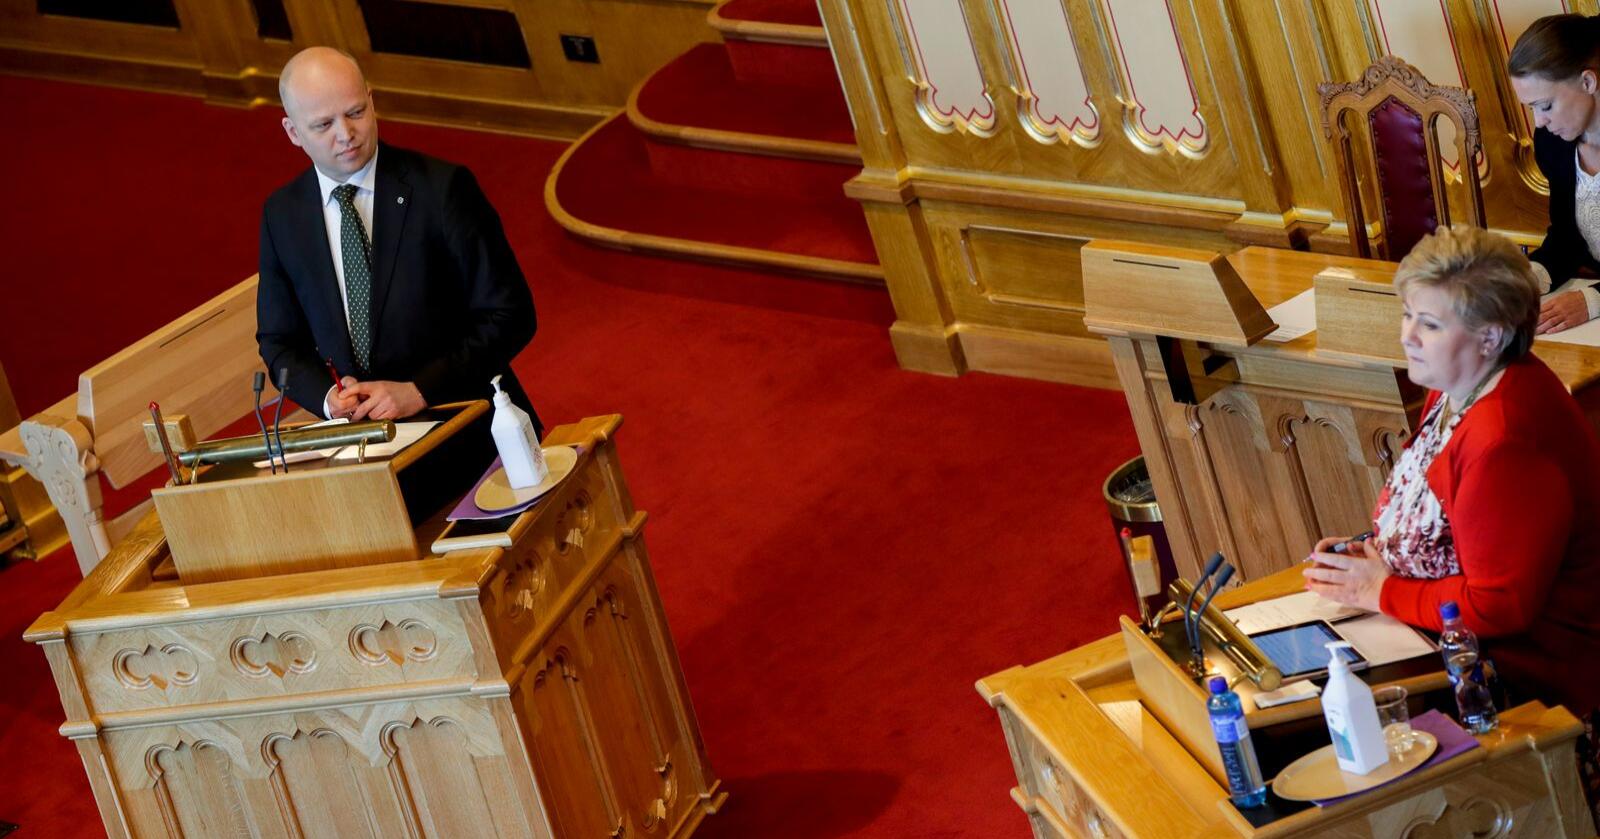 Sp-leiar Trygve Slagsvold Vedum utfordra statsminister Erna Solberg i den munnlege spørjetimen på Stortinget onsdag. Foto: Vidar Ruud / NTB scanpix / NPK